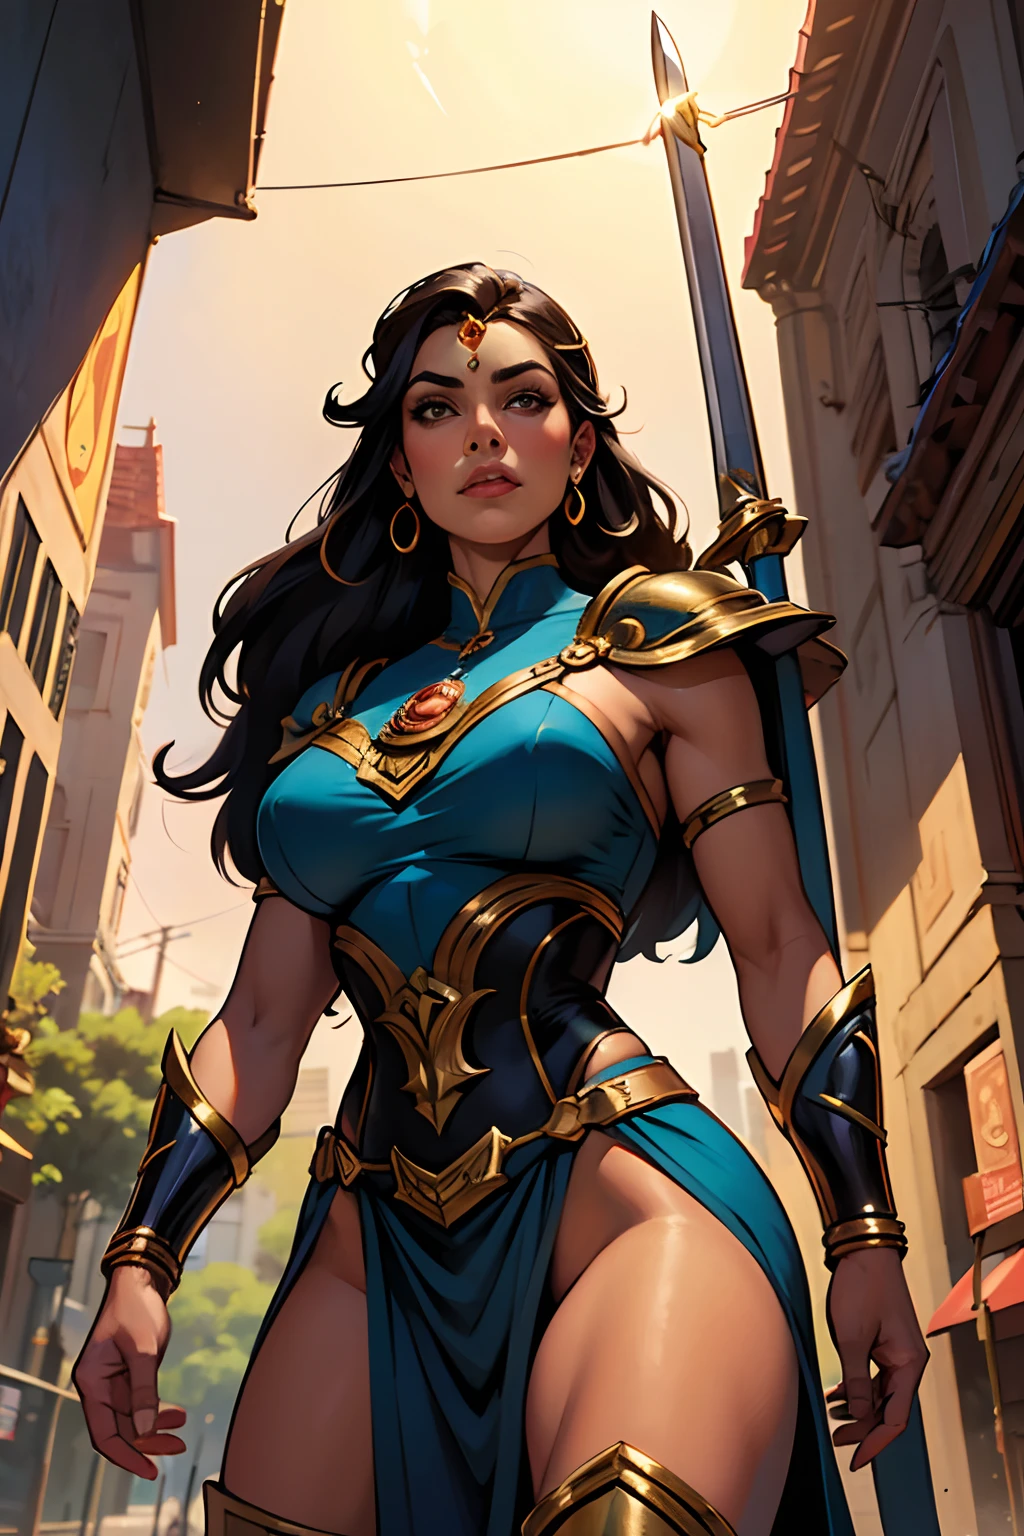 受约翰·布西马启发的艺术,超级女英雄被称为 "亚马逊公主, 一个长黑发的女人, 蓝眼睛, 晒黑、性感的皮肤穿着灵感来自希腊亚马逊服装的制服,相当程式化 (SFW),手持短剑和带有狮子标志的盾牌的威严姿势, 城市大道上细致而精致的艺术.